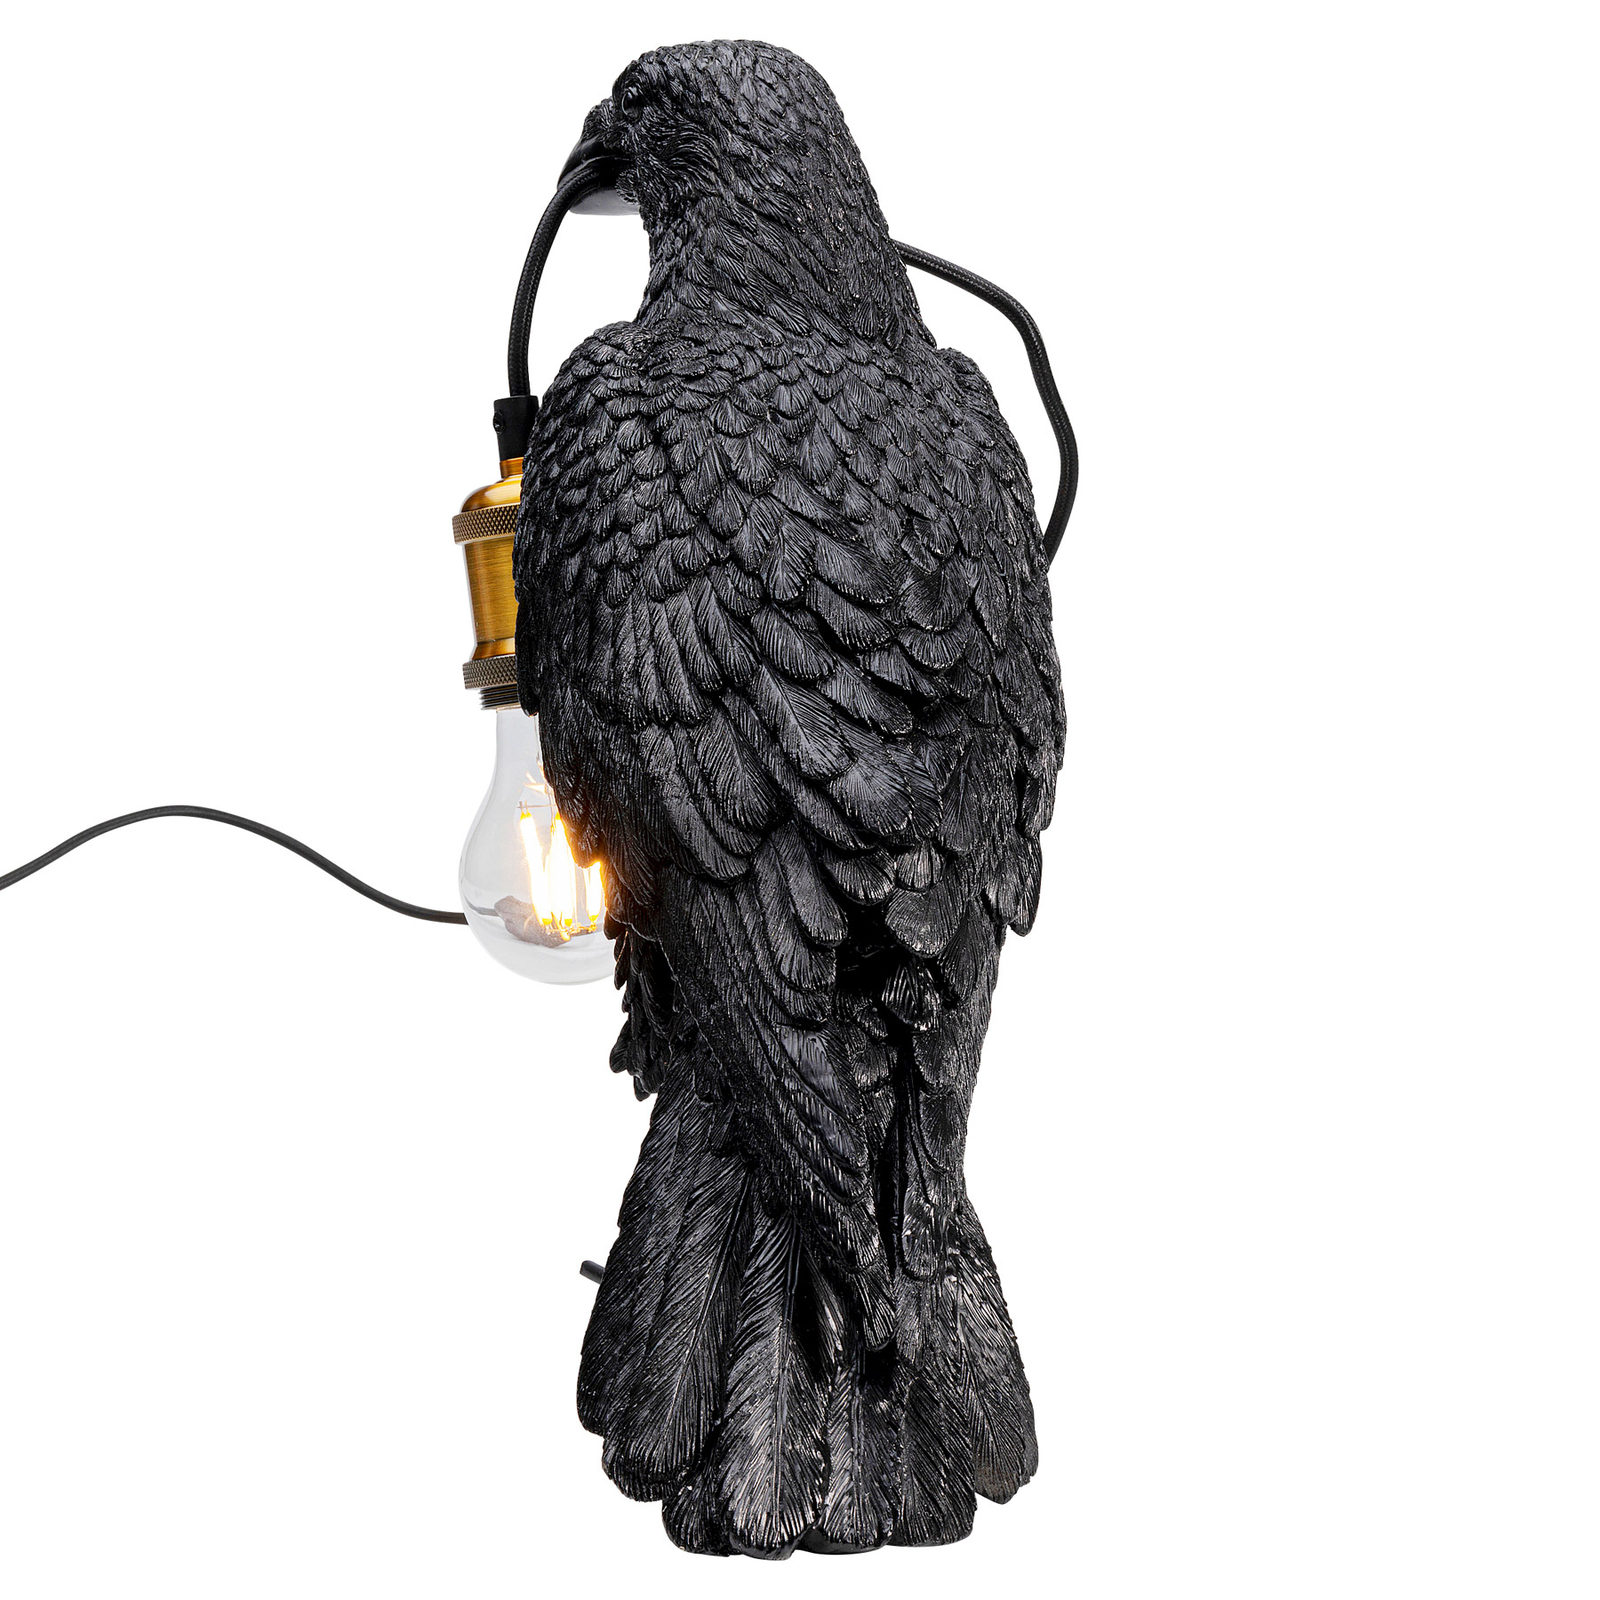 KARE Animal Crow bordslampa i form av en kråka